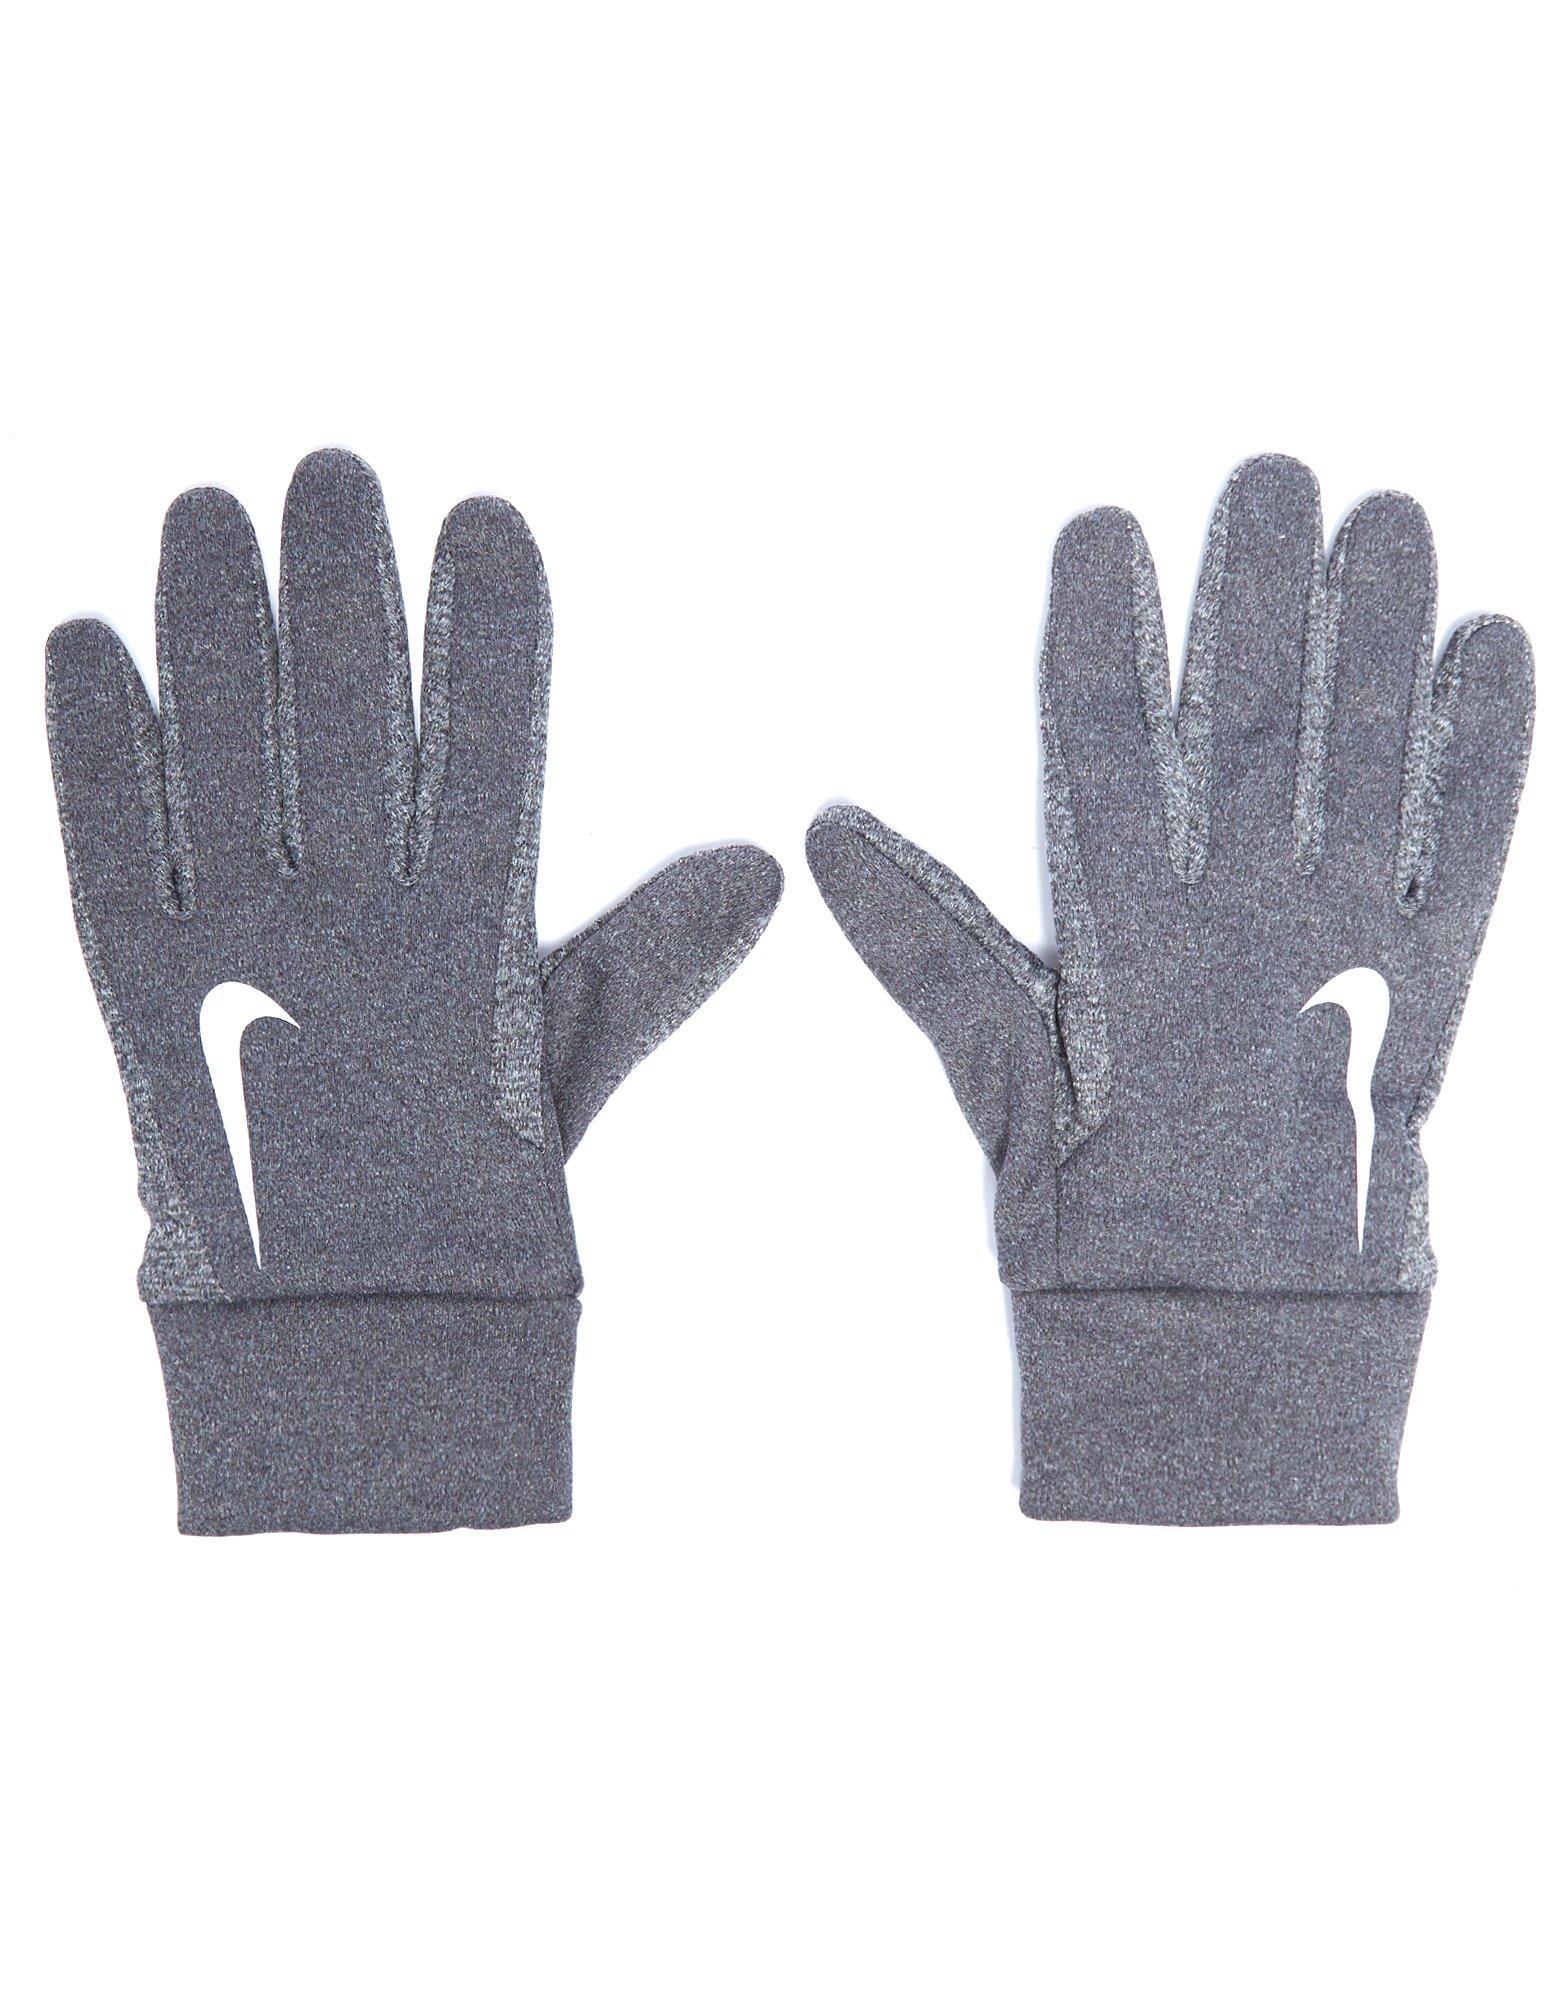 Hyperwarm Field Player Gloves in Grey 